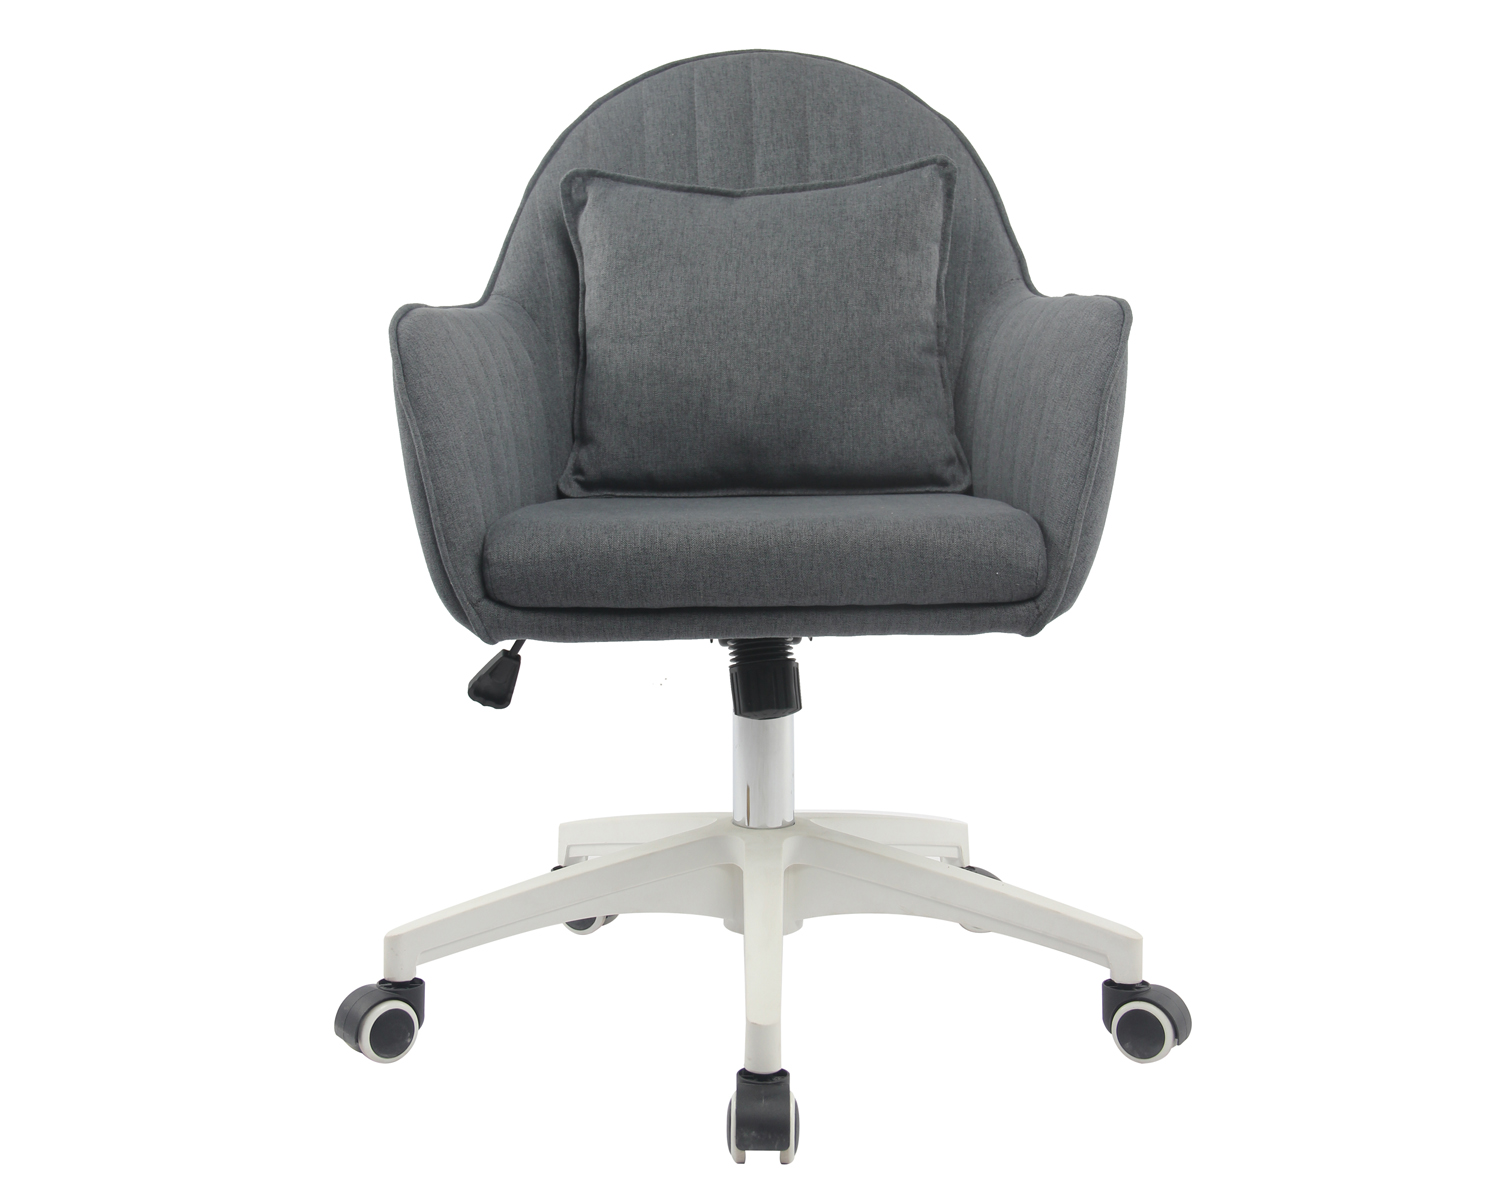 Home-Office-Stuhl mit gutem Schaumstoff, höhenverstellbarer Schreibtisch-Akzentstuhl mit mattschwarzer Basis, Twill-Stoff, hellgrau. Ausgewähltes Bild